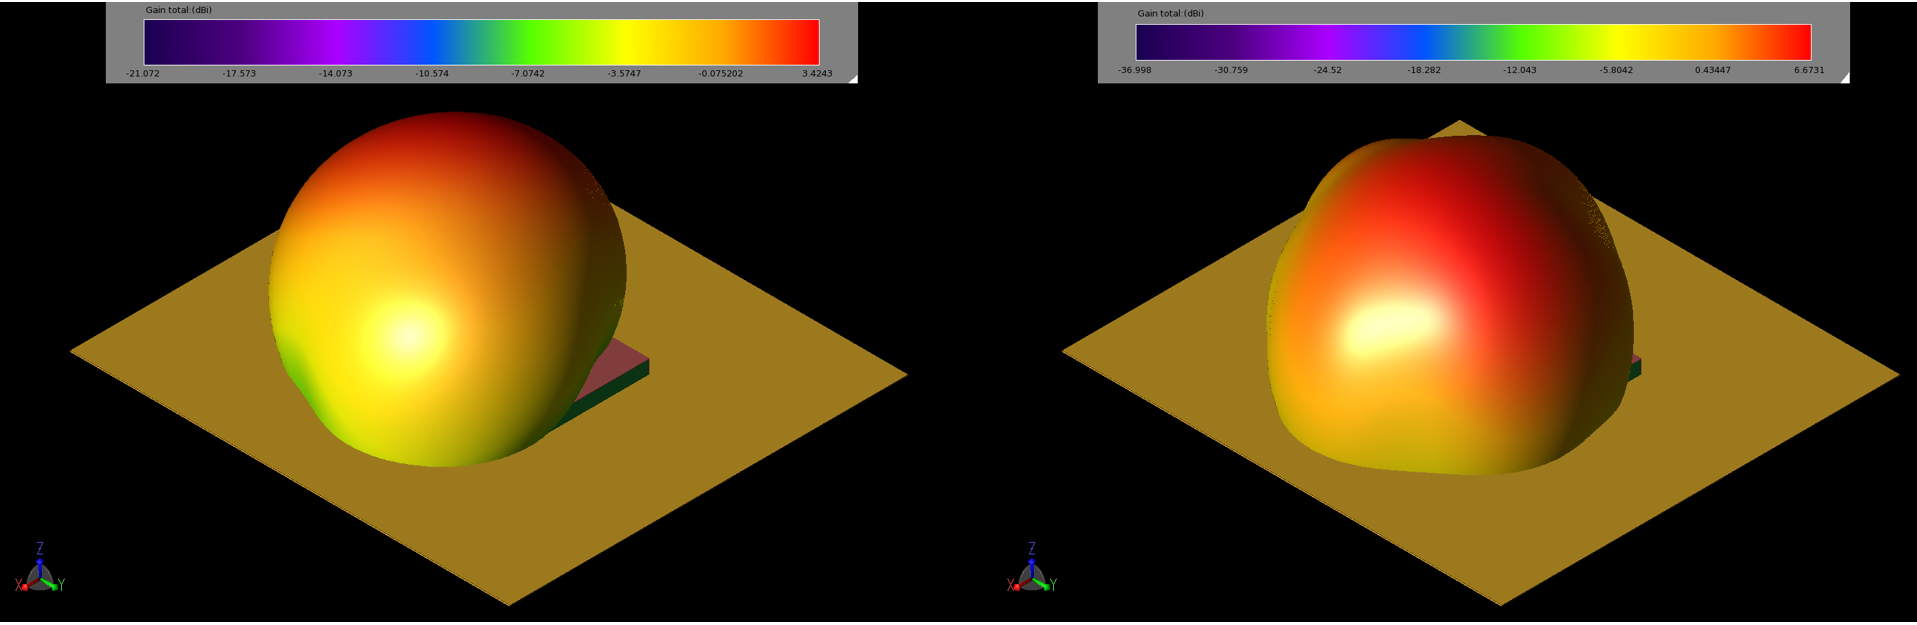 Abbildung 4: Die Verstärkungsmuster des Patches bei 2,45 GHz (links, 4a) und 5,5 GHz (rechts, 4b) sind kugelförmig mit Spitzenverstärkungswerten von 3,4 bzw. 6,7 dBi.